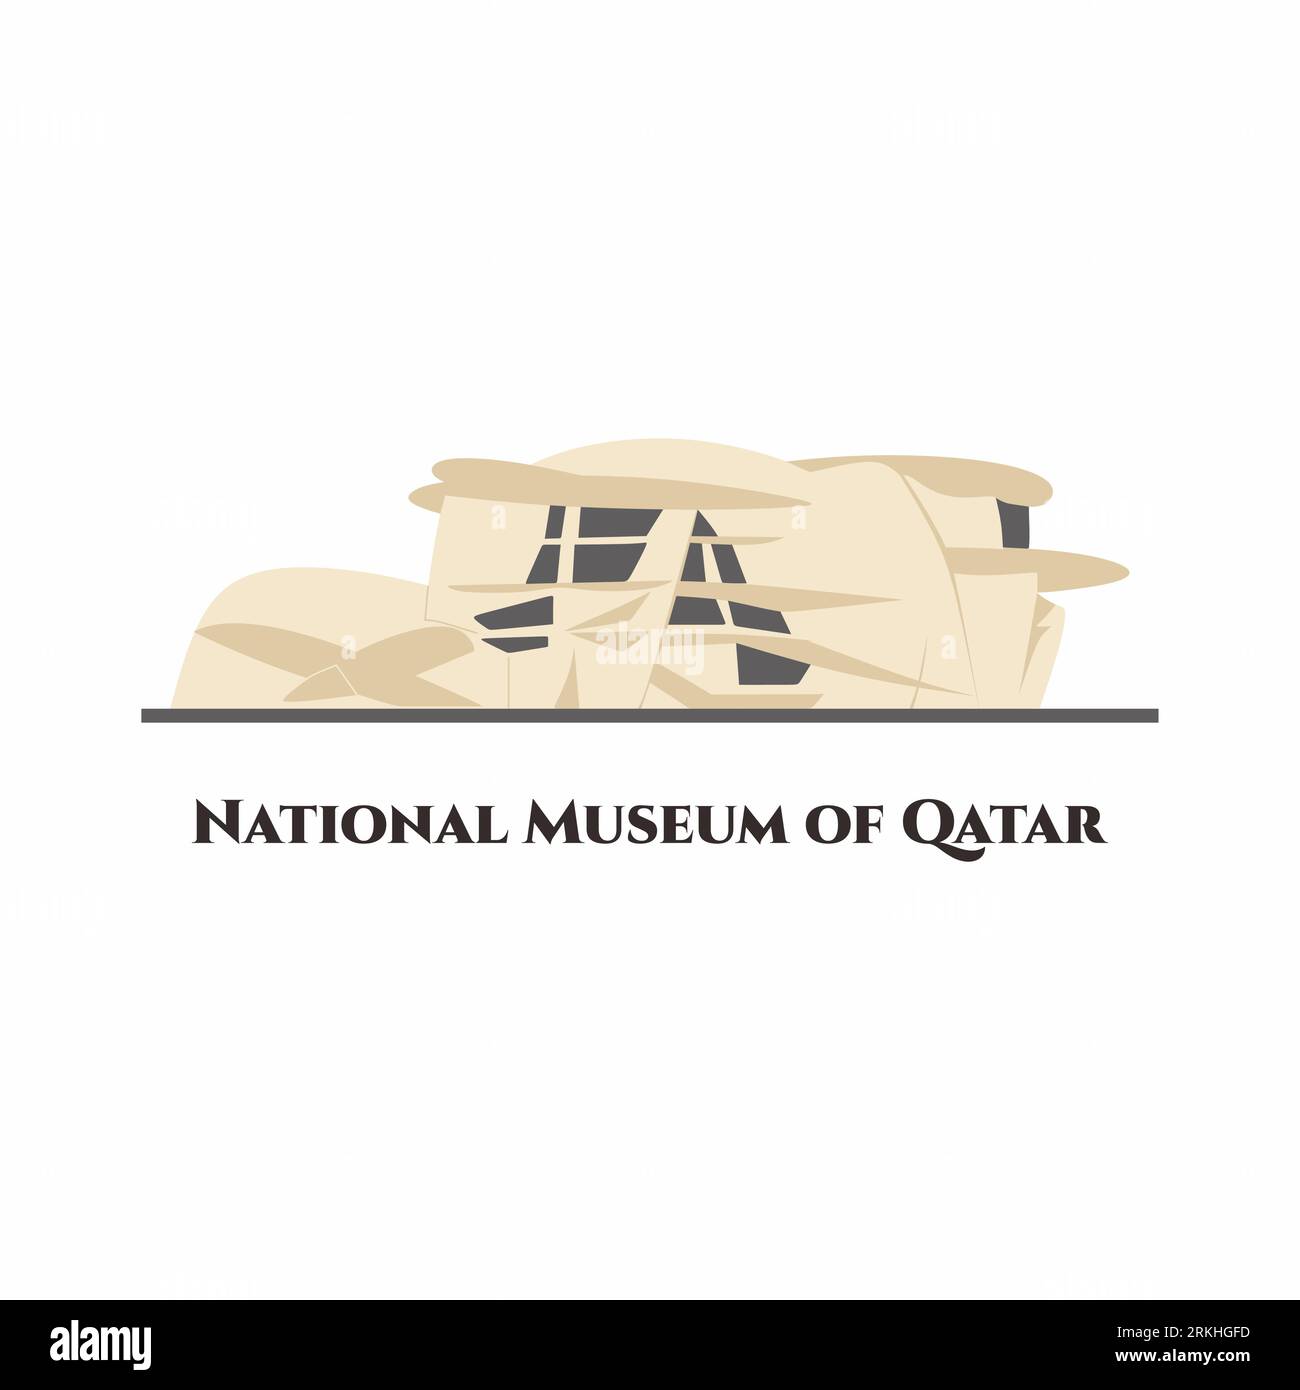 Le Musée national du Qatar vecteur de style de dessin animé plat. C'est un musée national à Doha, Qatar. Cet endroit vaut la peine d'être visité. Bâtiment d'attraction touristique Illustration de Vecteur